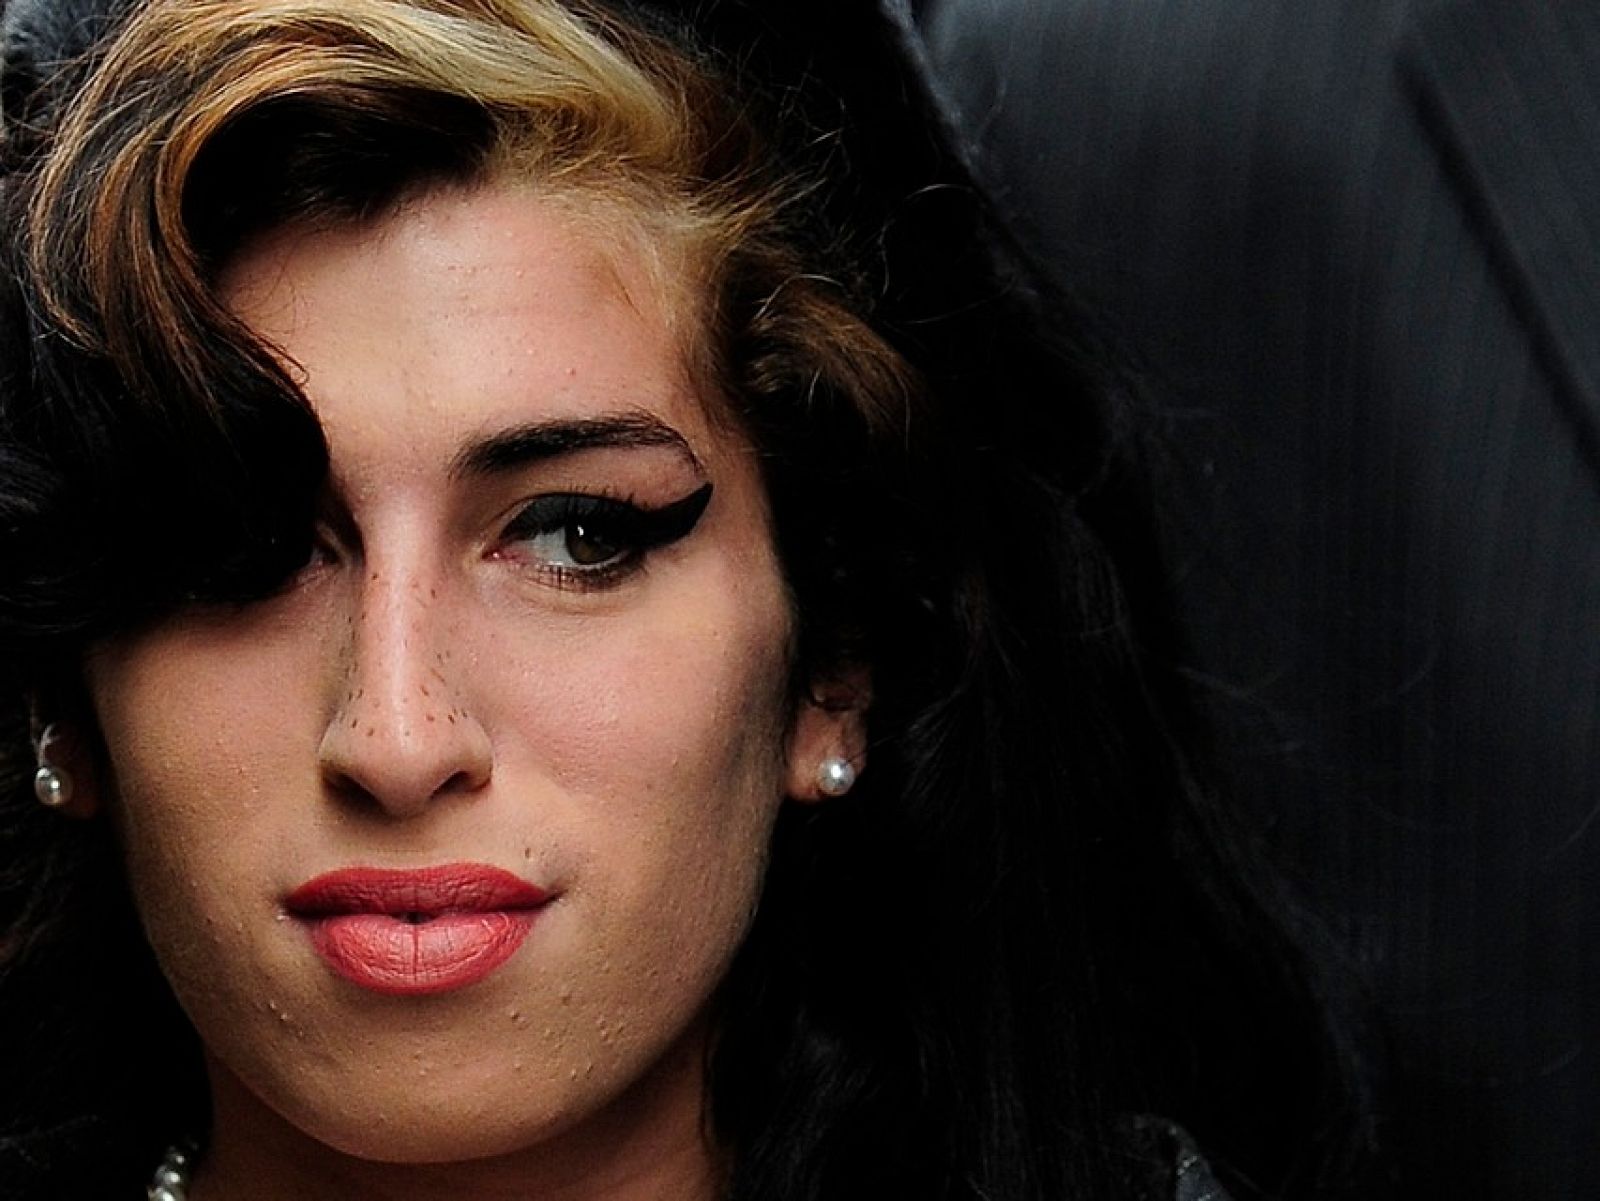 Foto de archivo de Amy Winehouse en 2009.